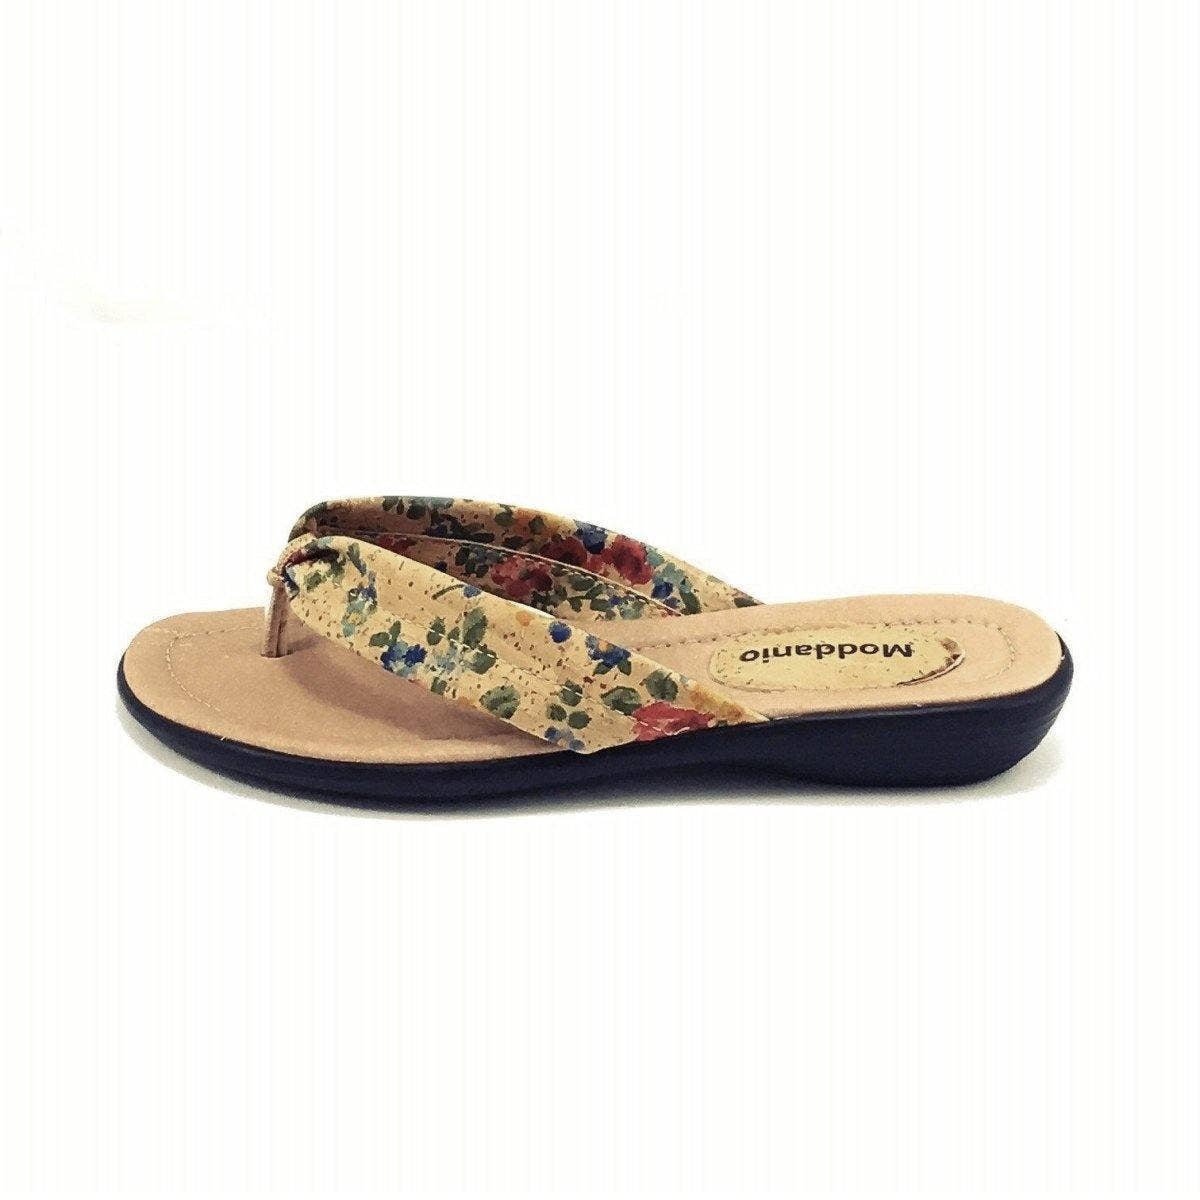 Cork Sandal and Vegan Flip Flop Sandals for Women Floral